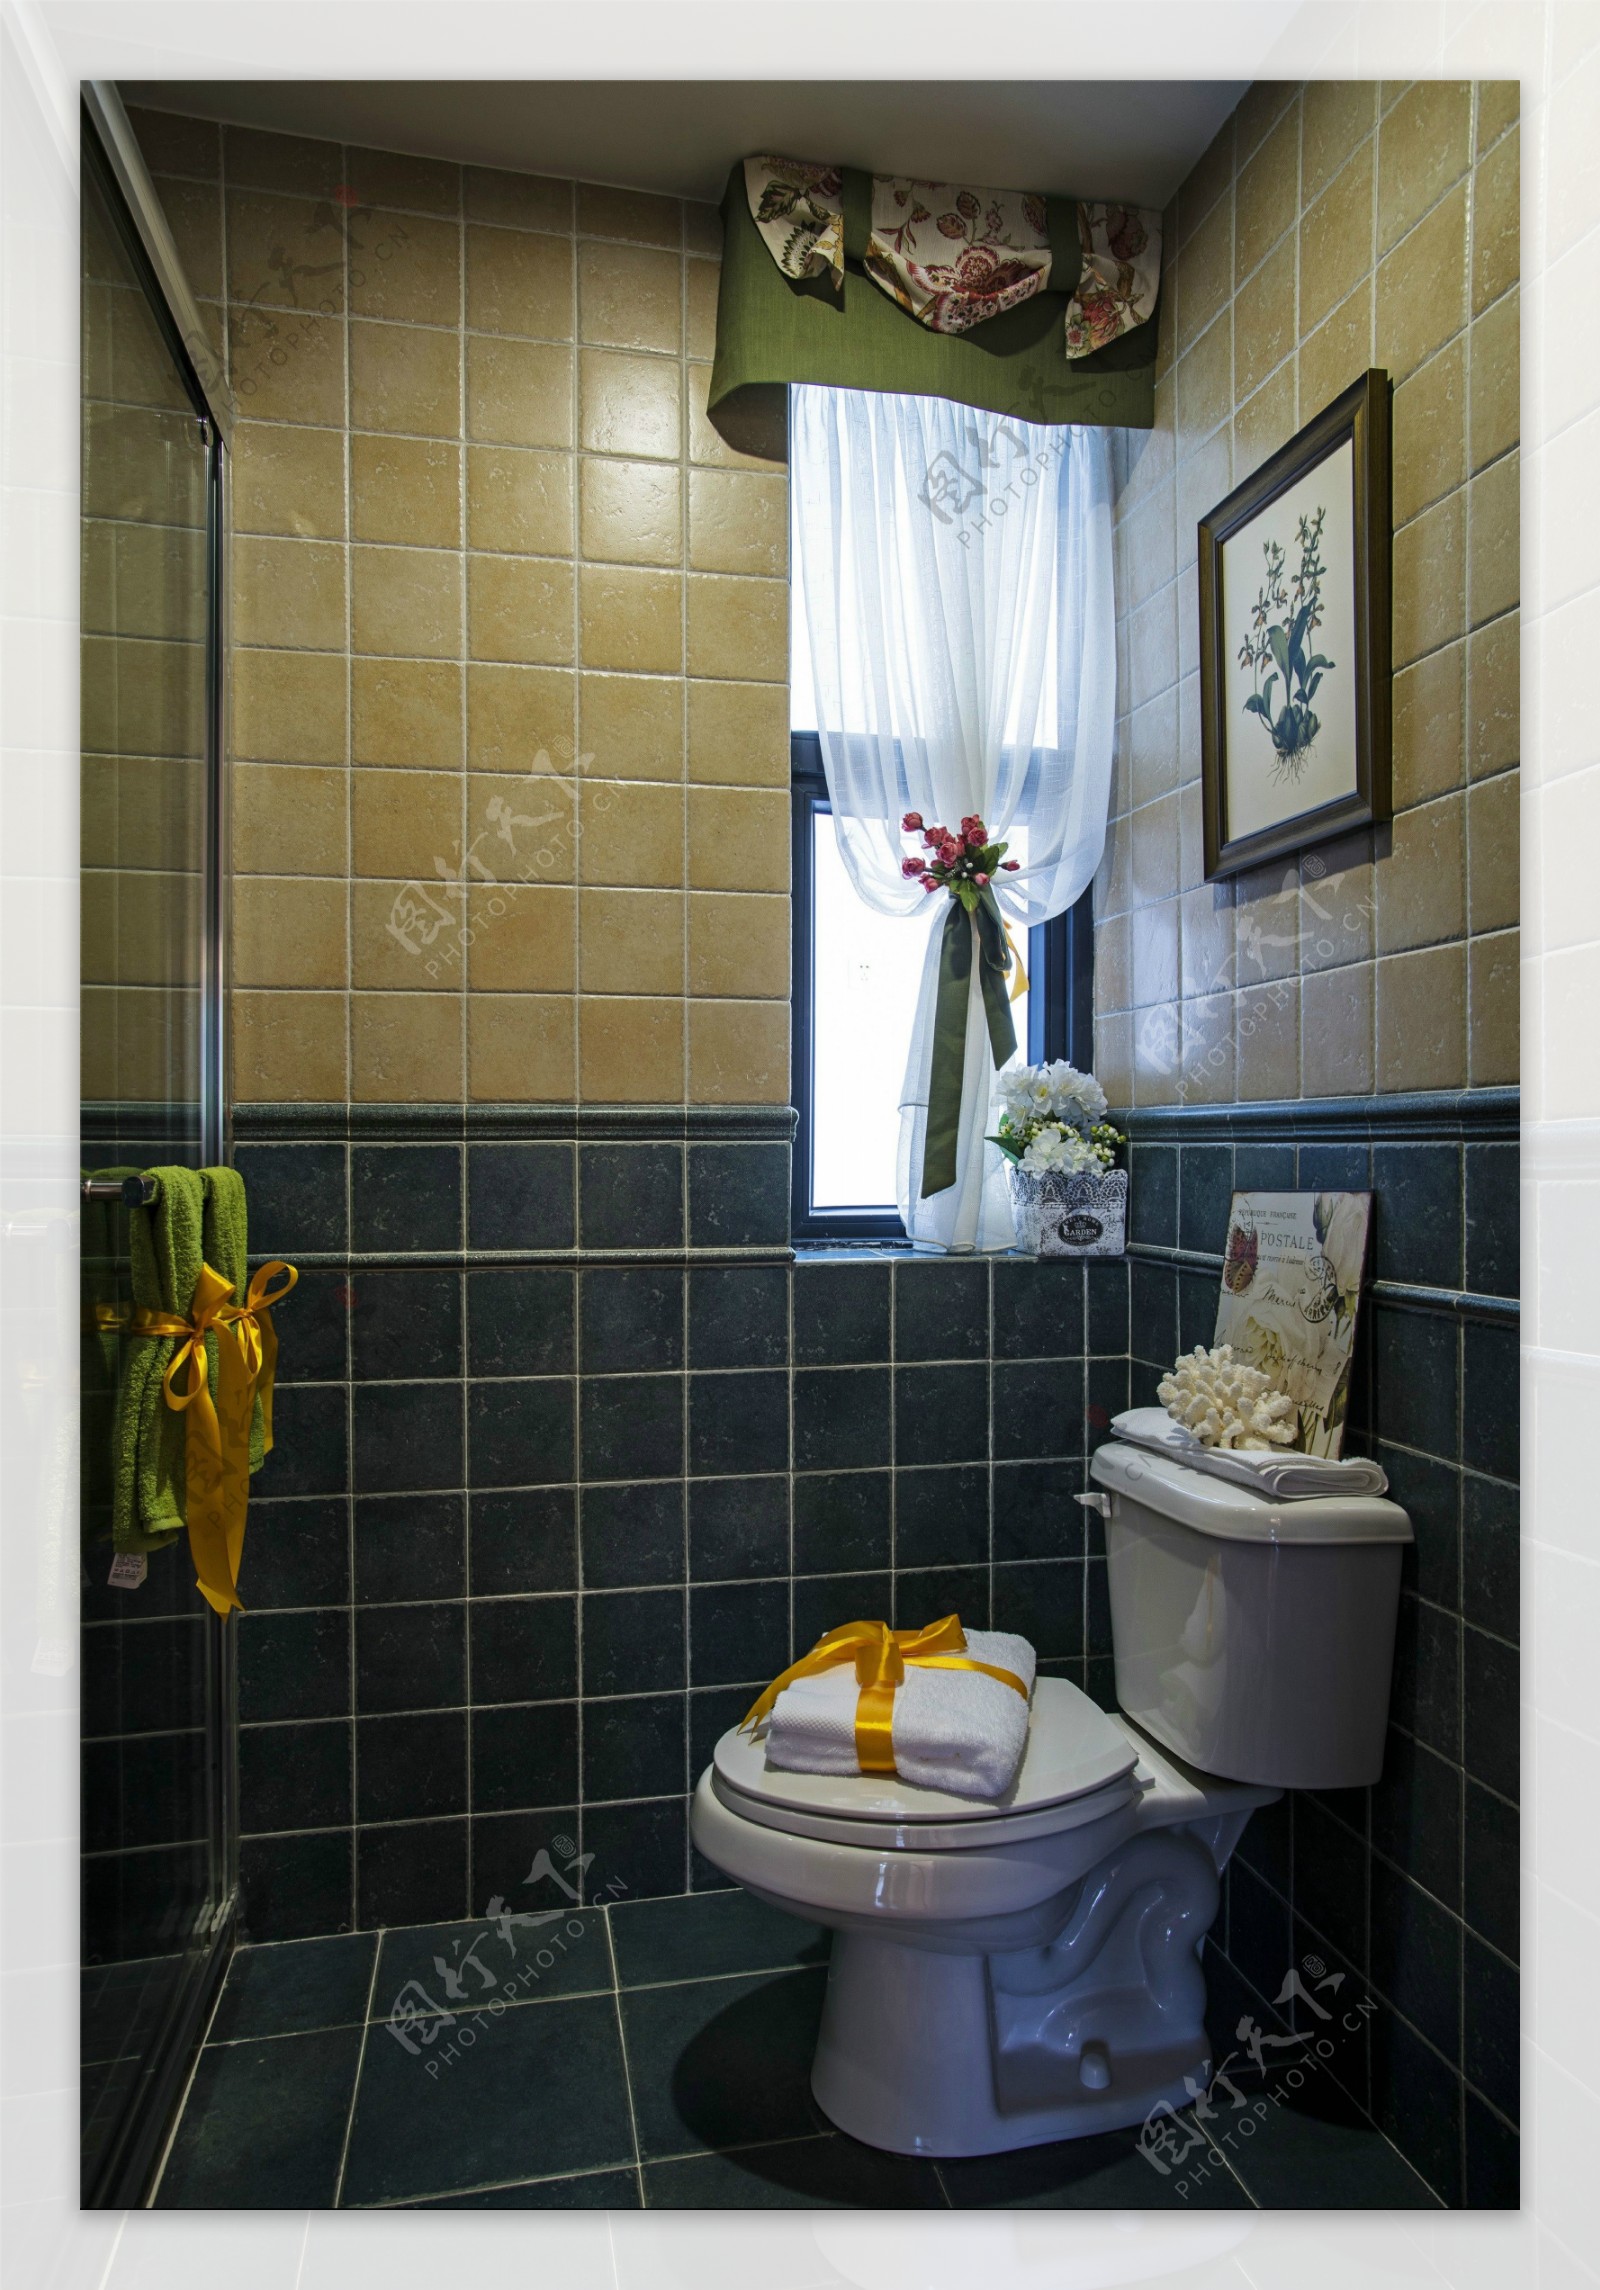 现代拼色瓷砖背景墙浴室室内装修效果图